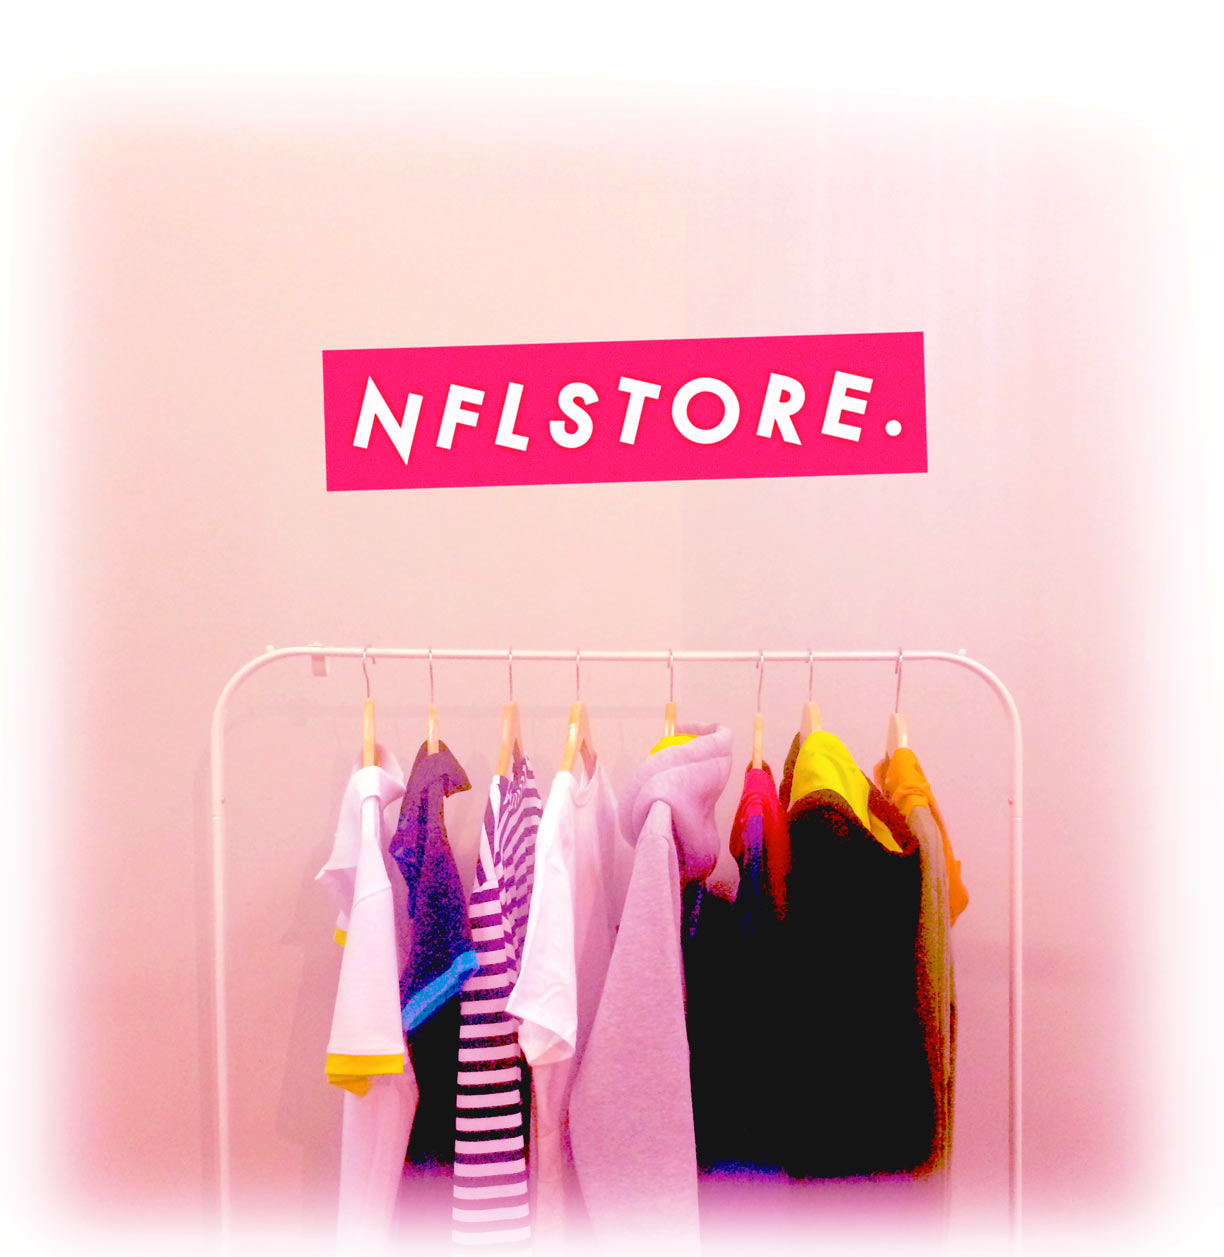 nflstore clothes